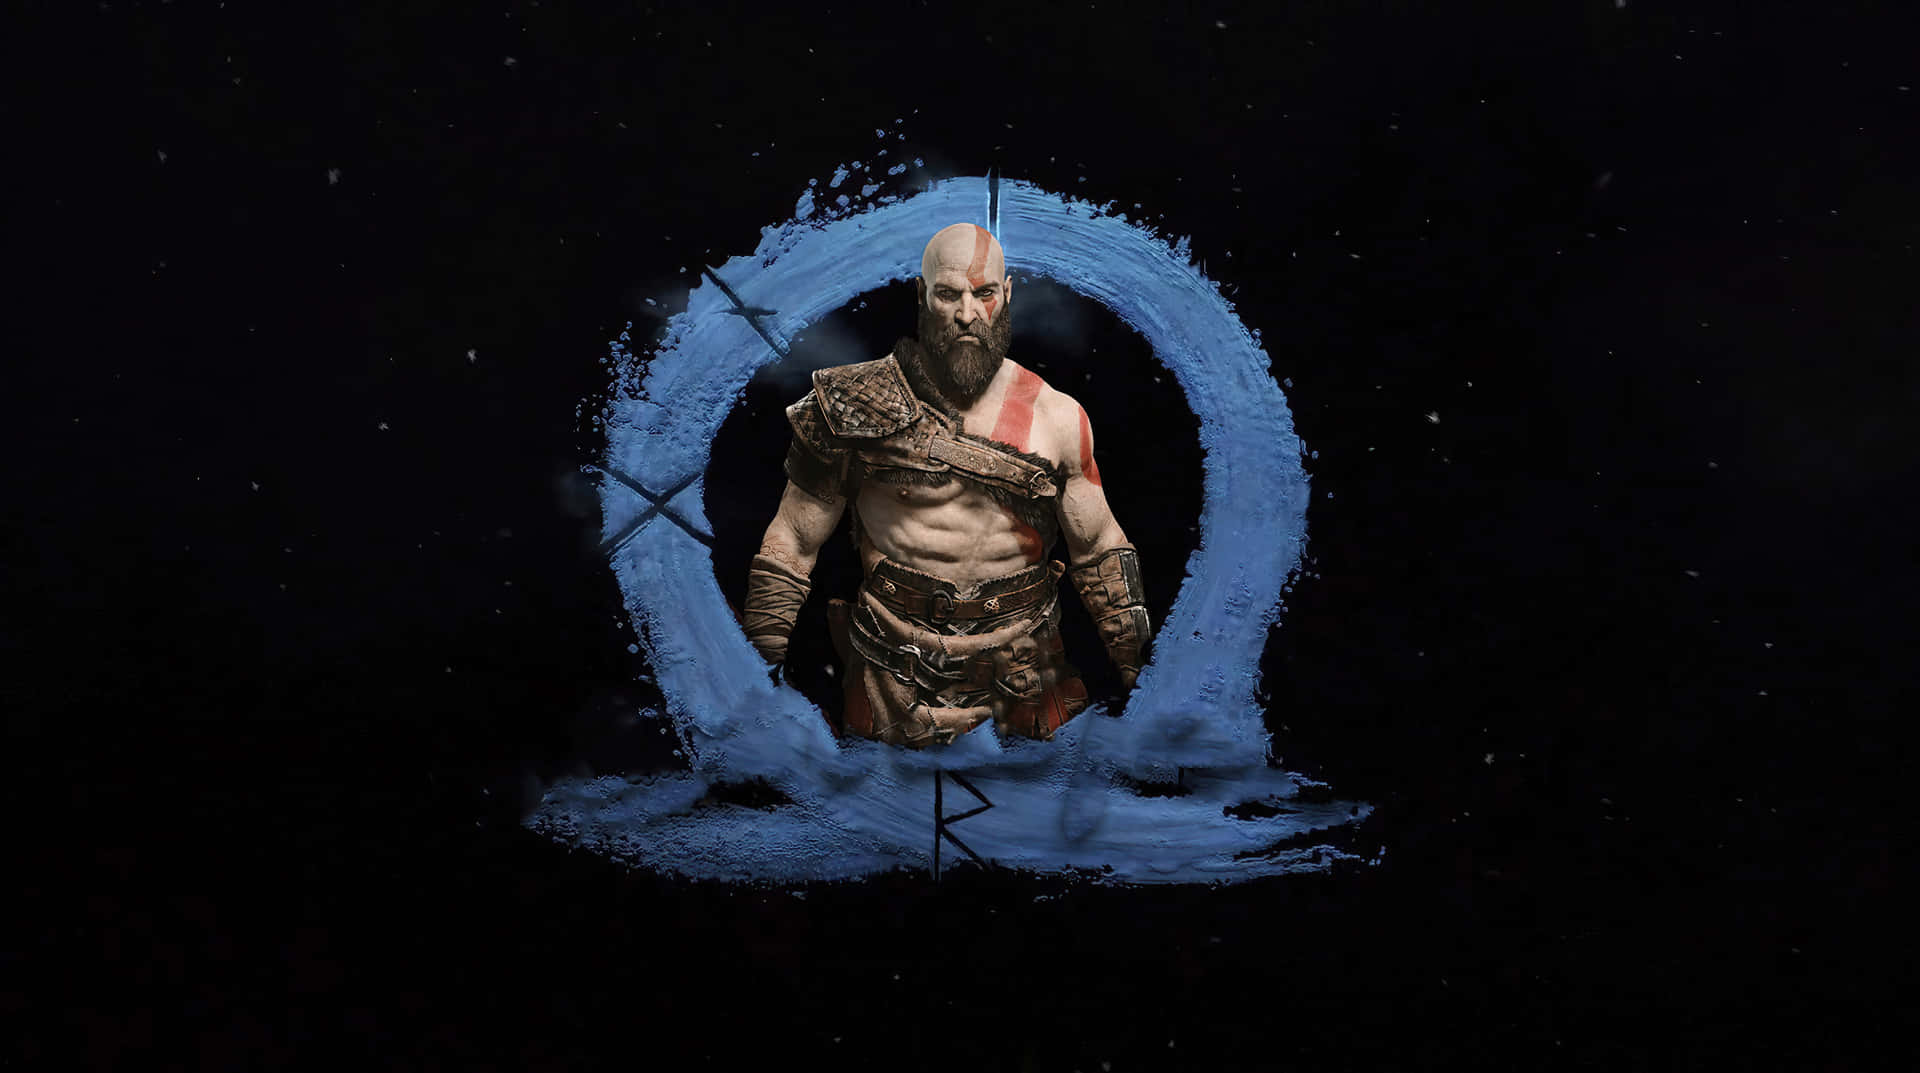 Kratos and Atreus brave the dangers of Midgard in God of War 5 Wallpaper